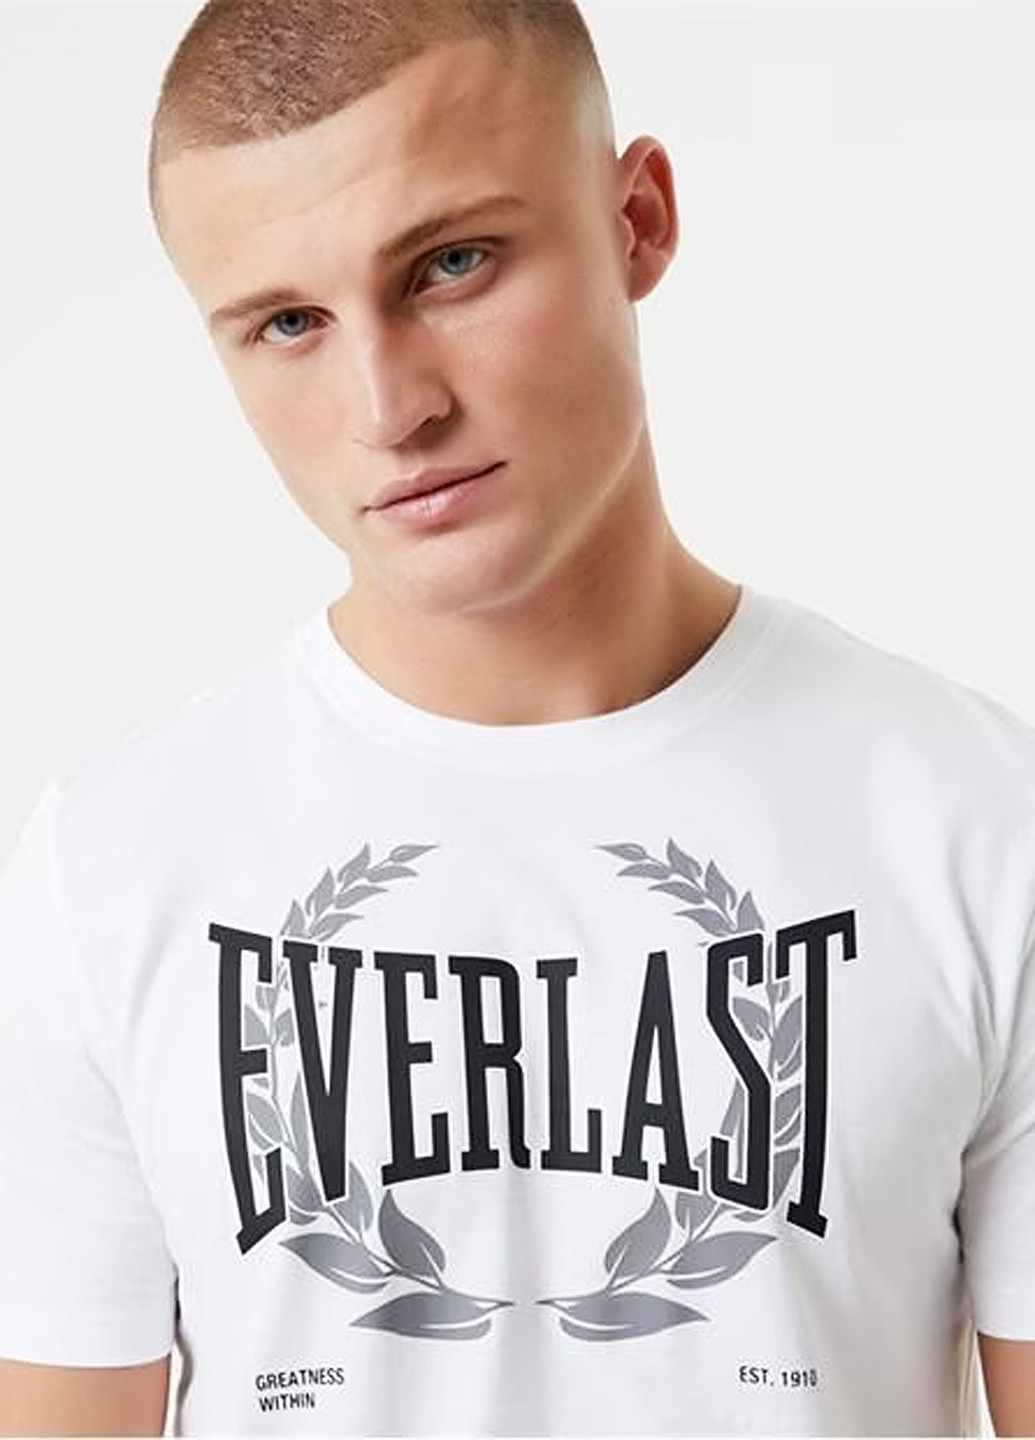 Білосніжна футболка Everlast